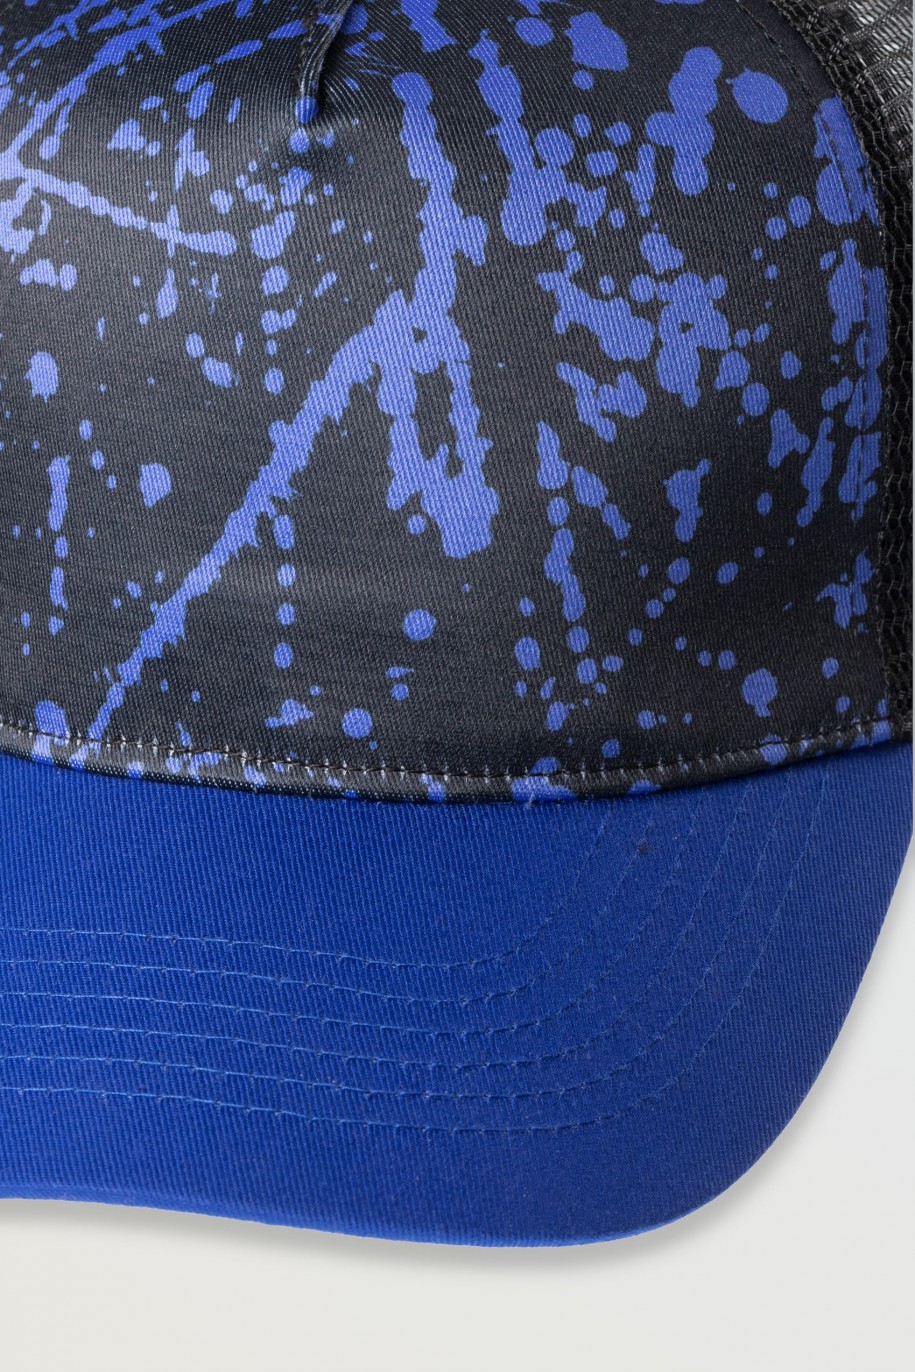 Czarna czapka z daszkiem z niebieską grafiką - 46523